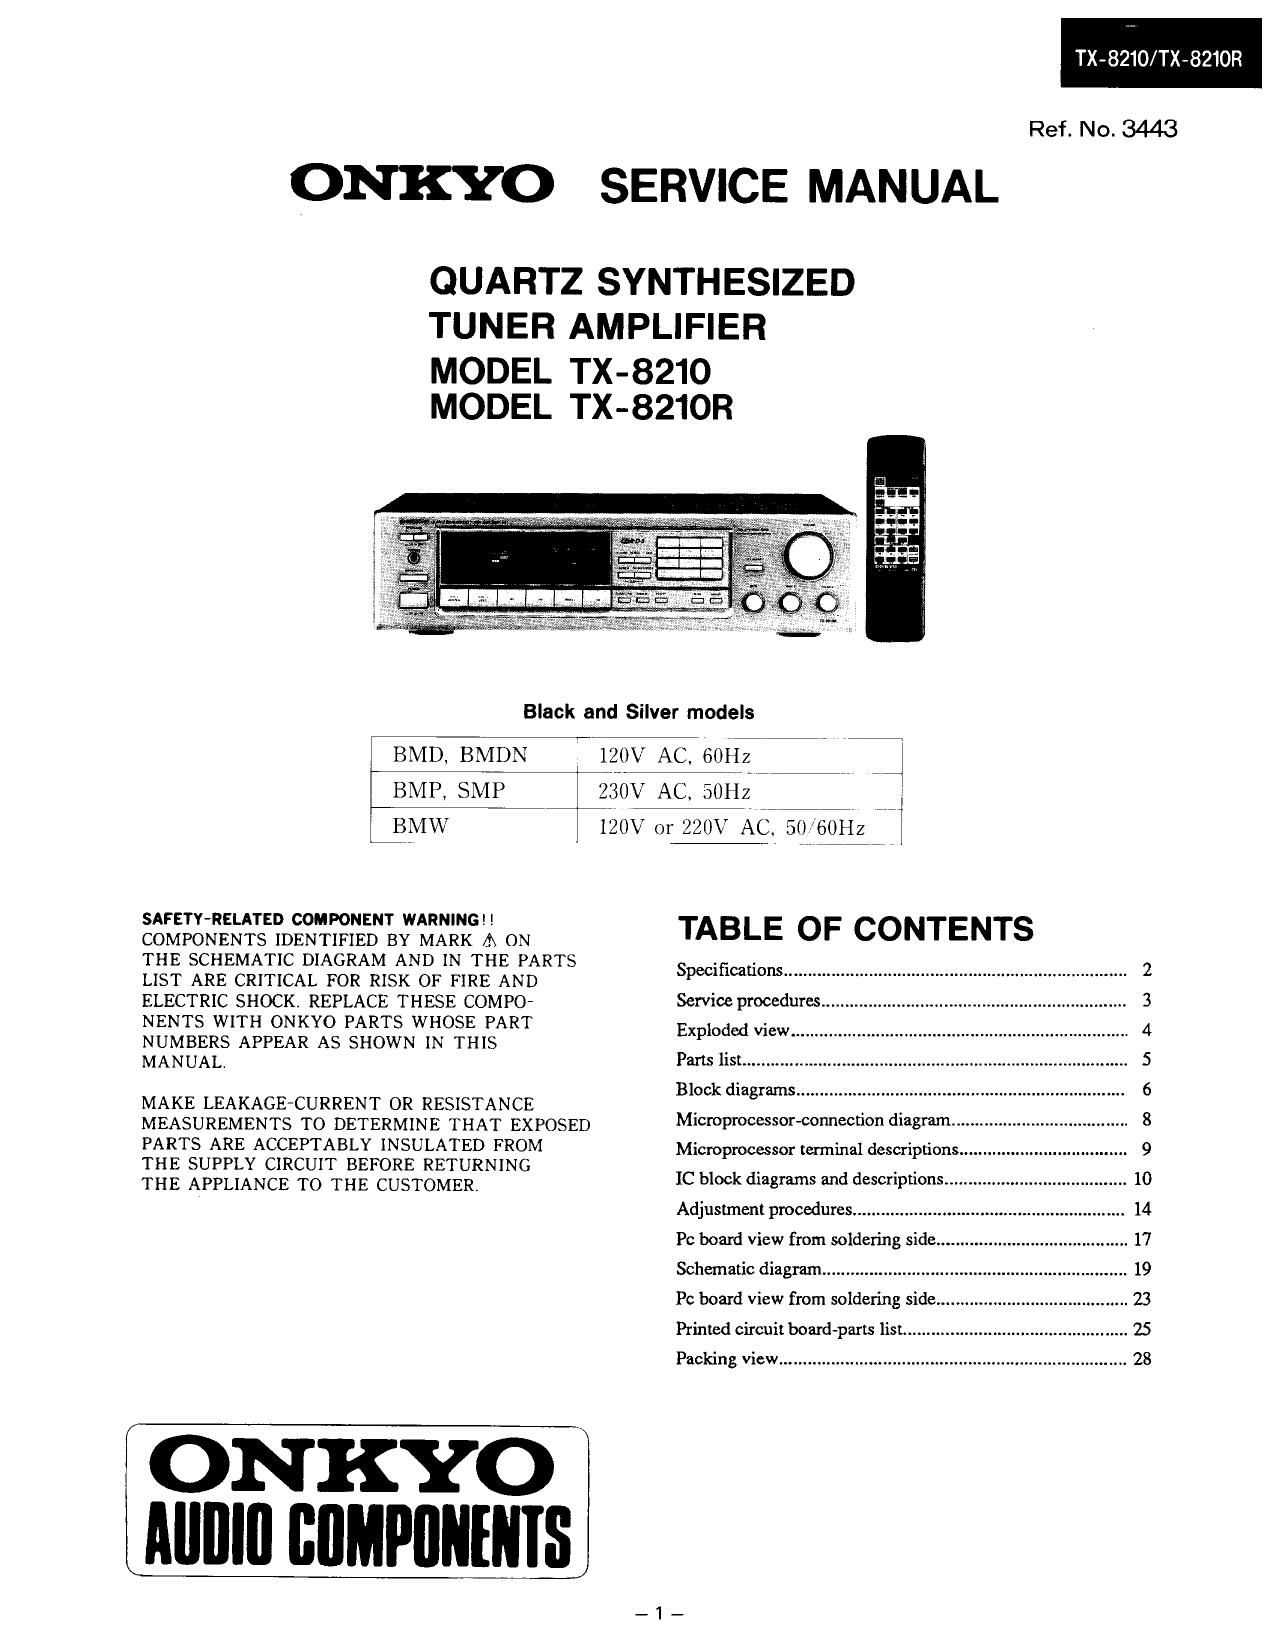 Onkyo TX 8210 Service Manual